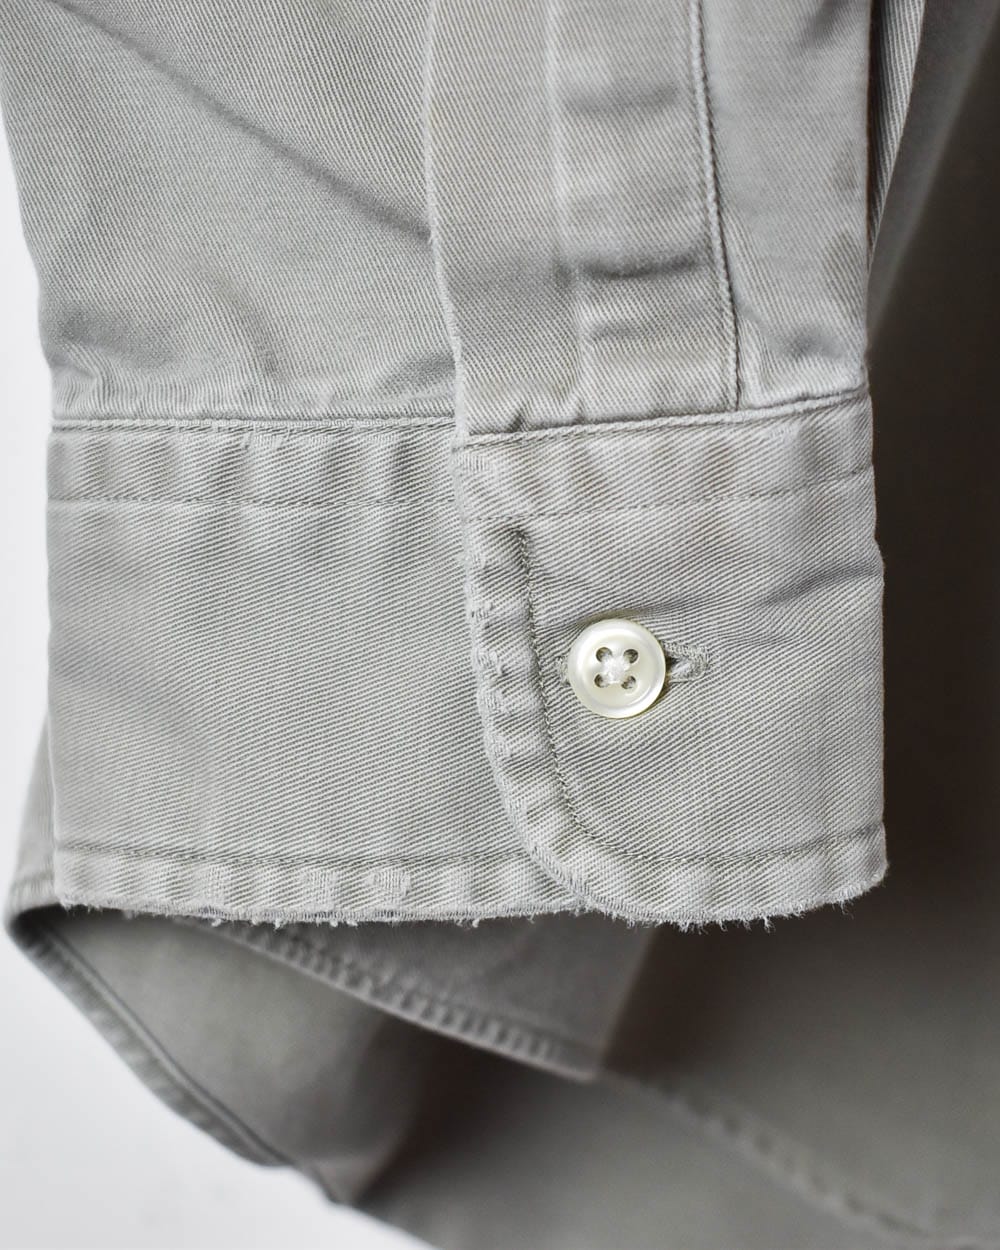 Khaki Polo Ralph Lauren Blake Shirt - Medium